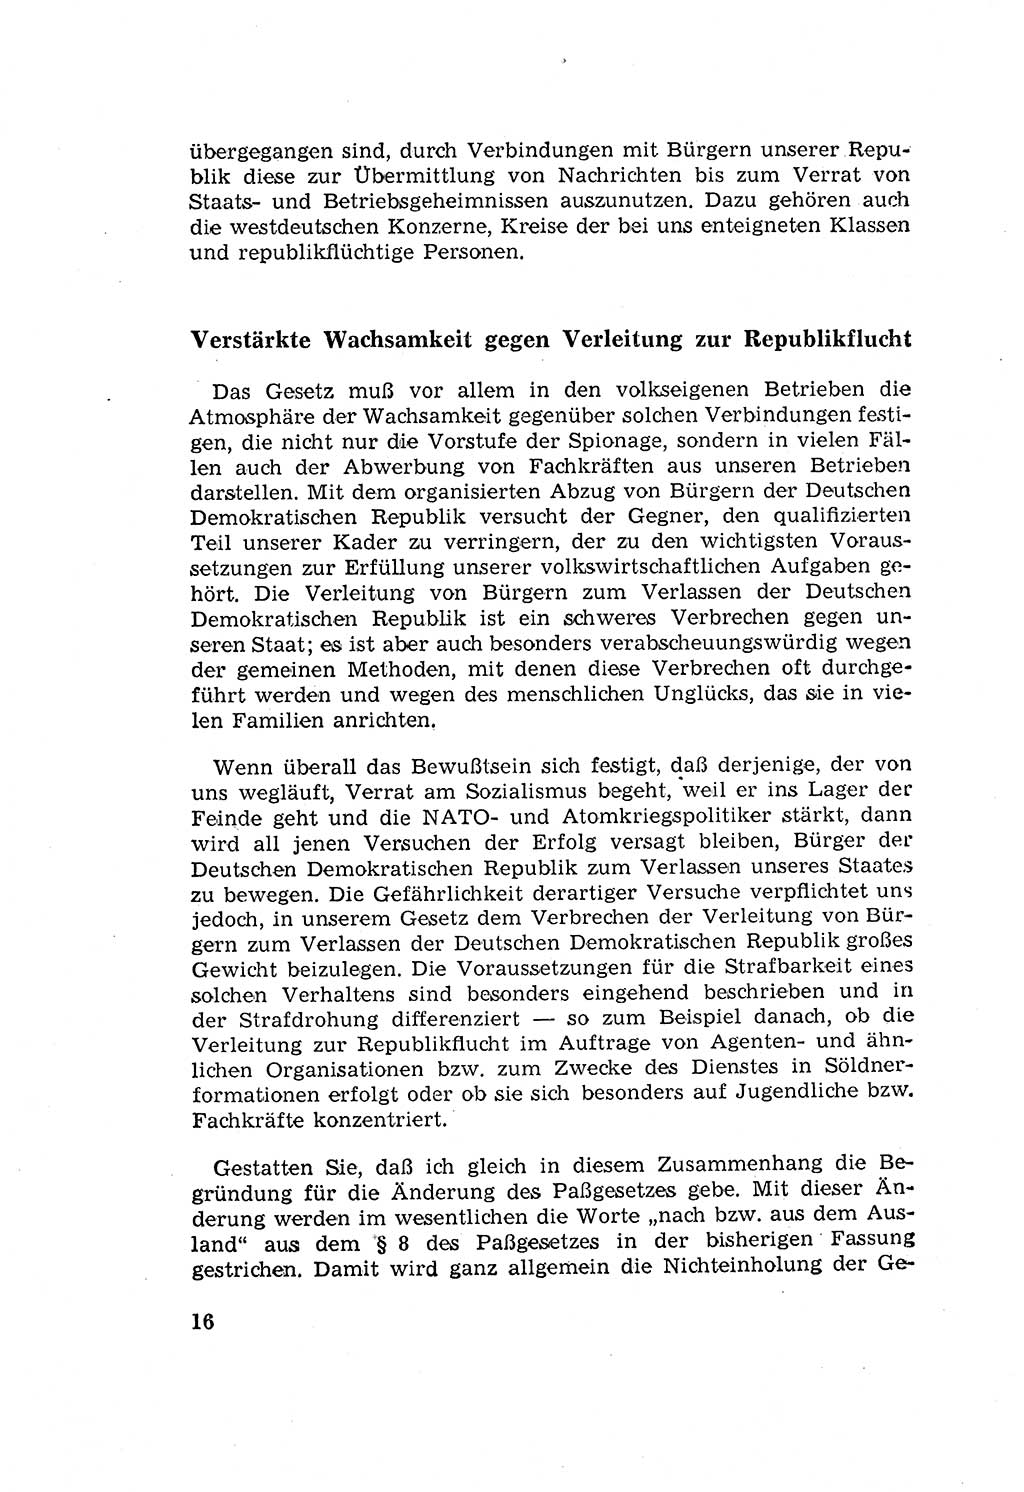 Zum Erlaß des Gesetzes zur Ergänzung des Strafgesetzbuches (StGB), Strafergänzungsgesetz (StEG) [Deutsche Demokratische Republik (DDR)] 1957, Seite 16 (StGB StEG DDR 1957, S. 16)